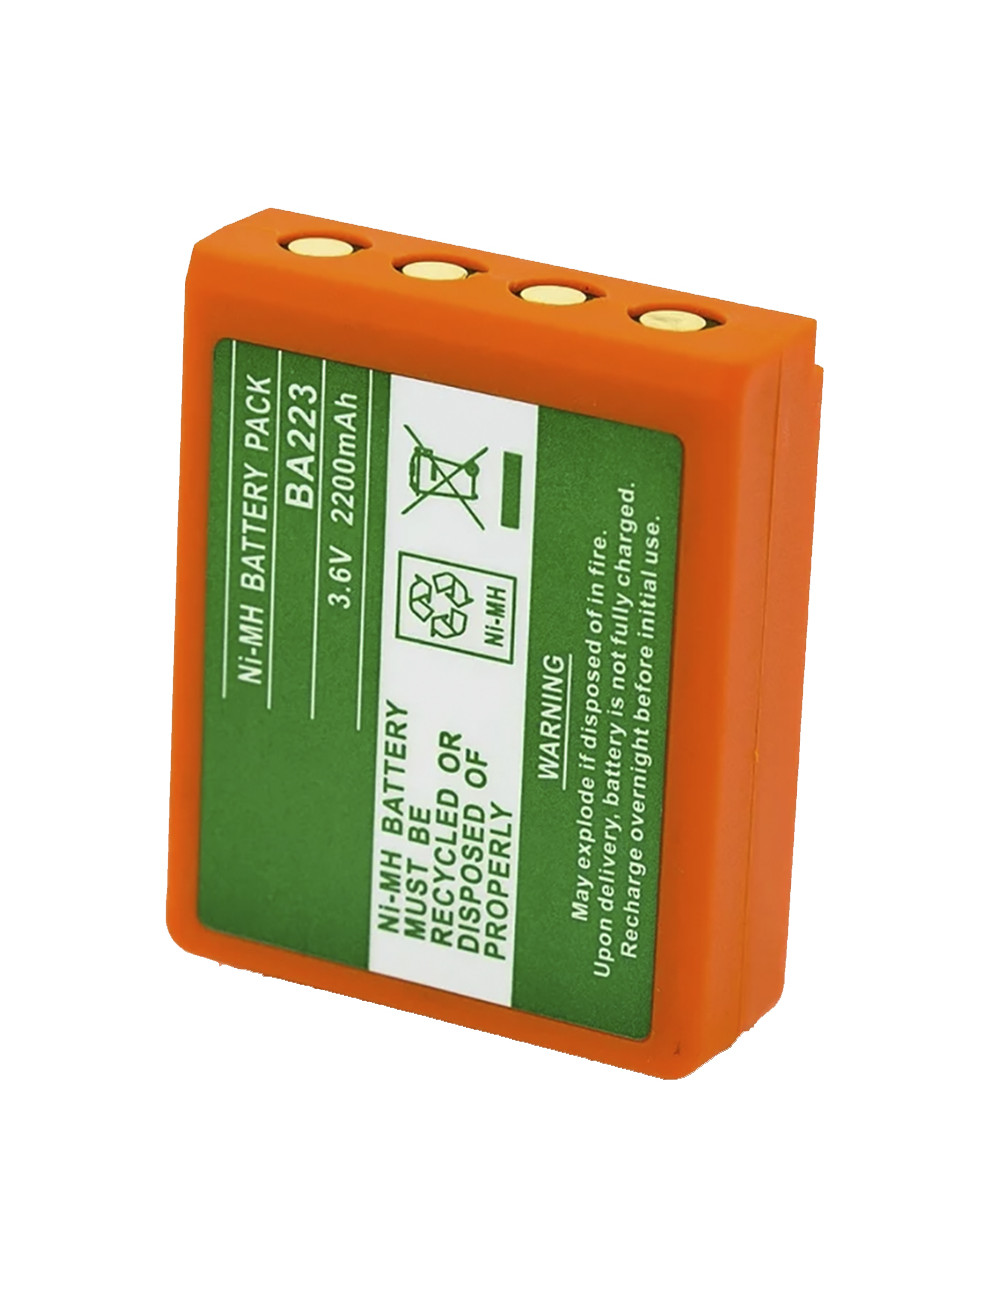 Batería compatible HBC Radiomatic FUB6, BA223030, BA223000 3,6V 2200mAh - BA223 -  -  - 1